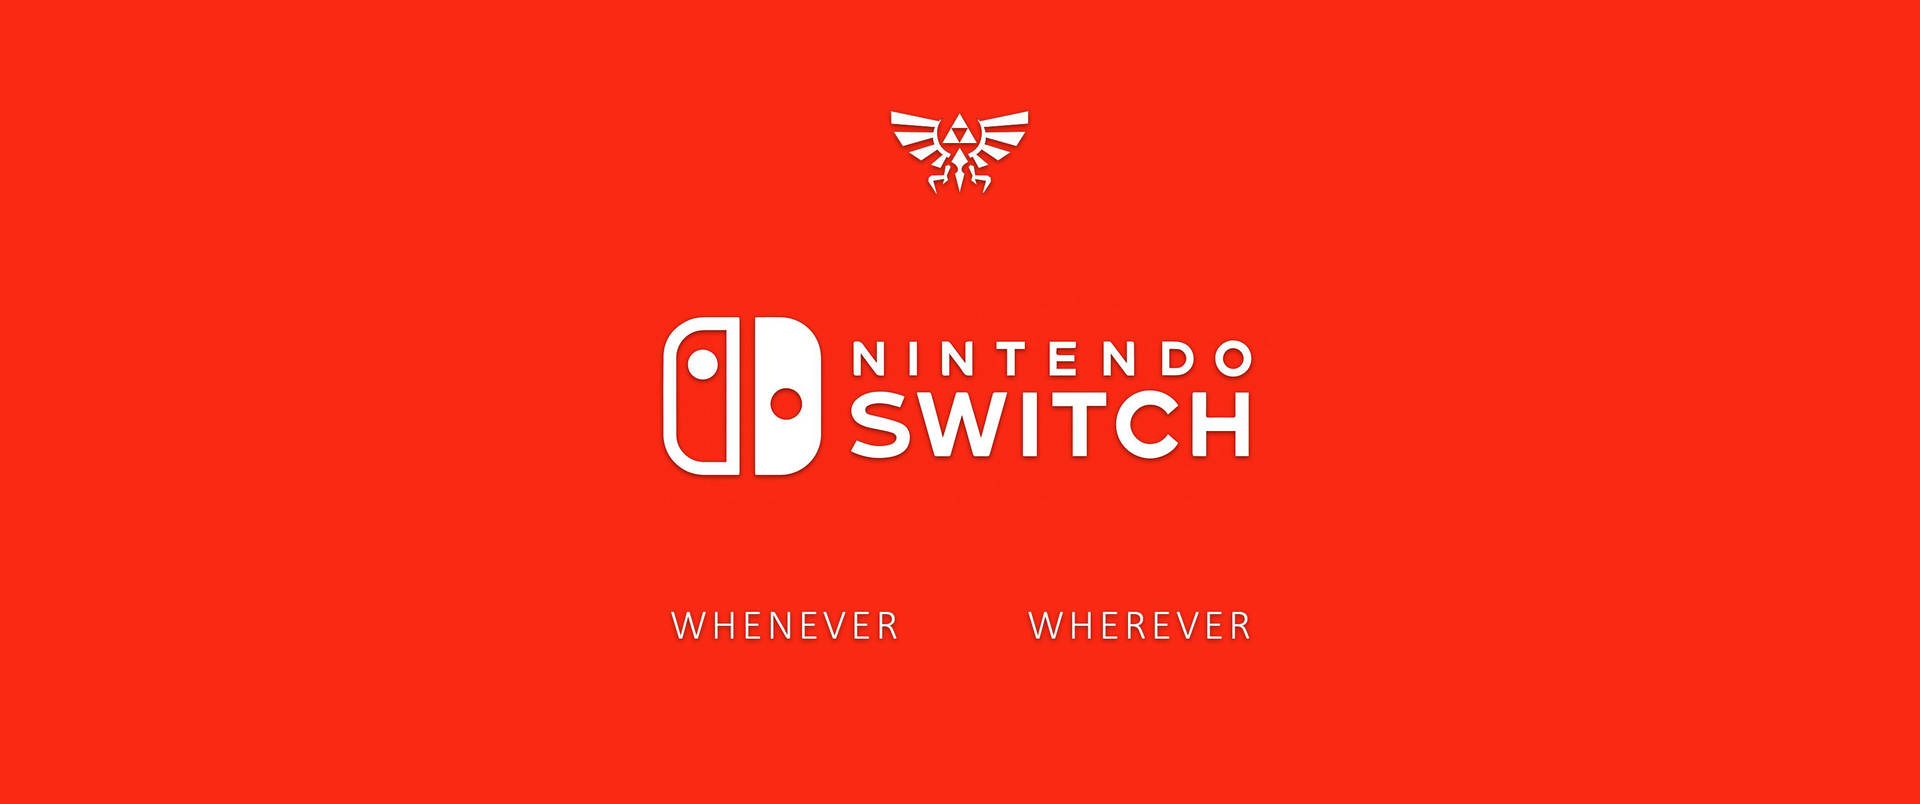 Nintendo Switch Logo Whenever Wherever Wallpaper